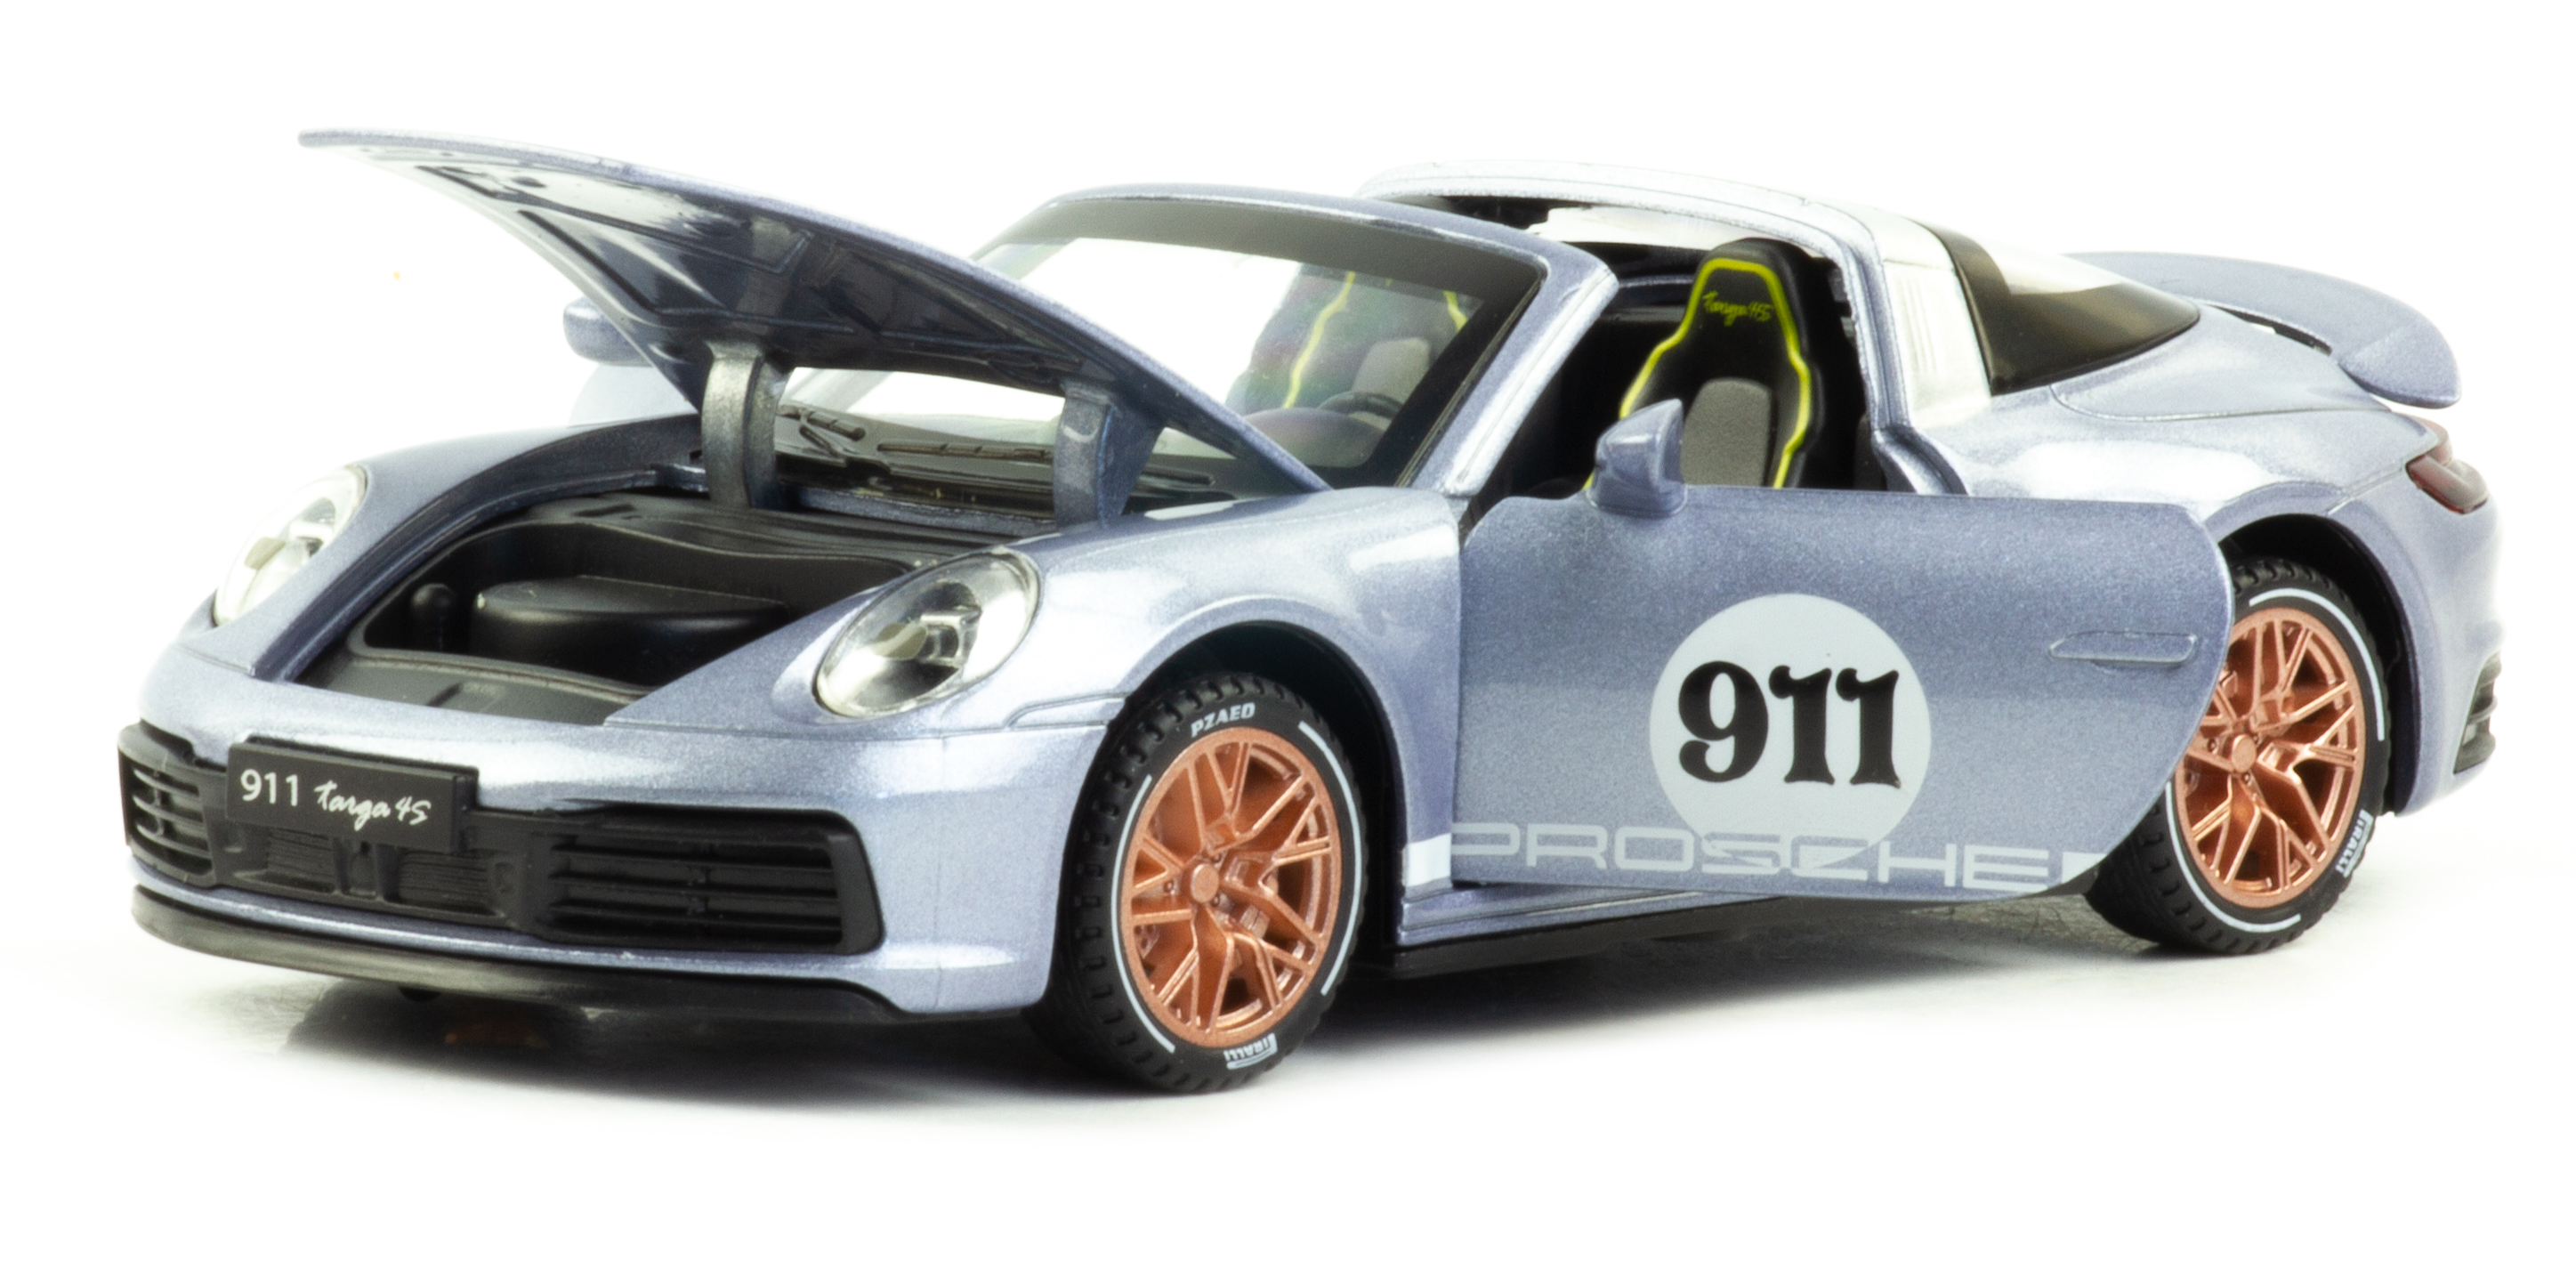 Металлическая машинка Newao Model 1:32 «Porsche 911 Targa» ХА3225В, свет, звук, инерционная / Микс